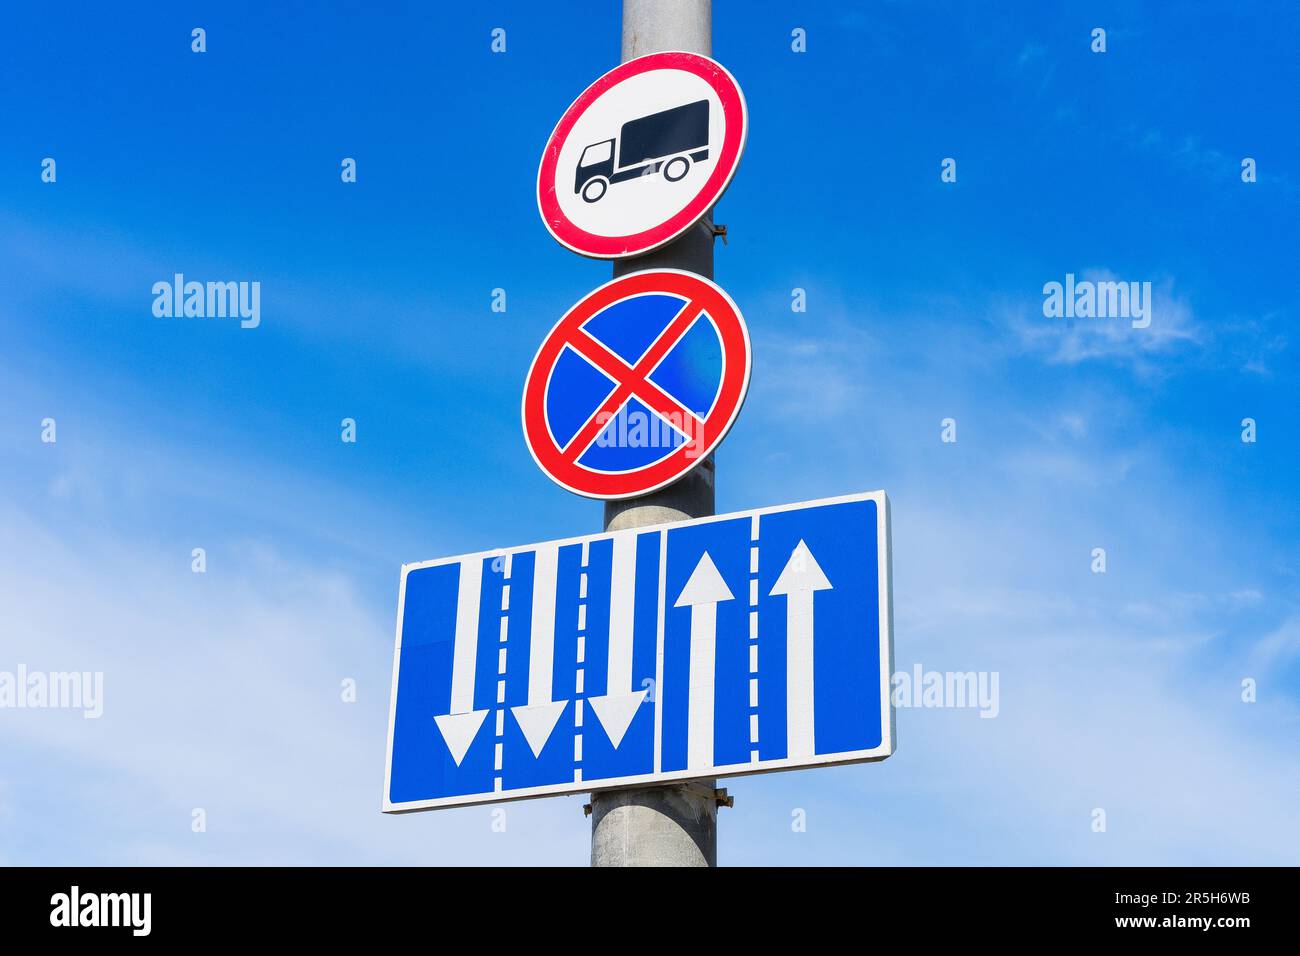 Ein Verkehrsschild, das das Parken von Fahrzeugen verbietet (rotes Kreuz auf blauem Kreis), mit einem zusätzlichen Schild, das die Bewegung von Lastwagen verbietet und die Fahrspur anzeigt Stockfoto